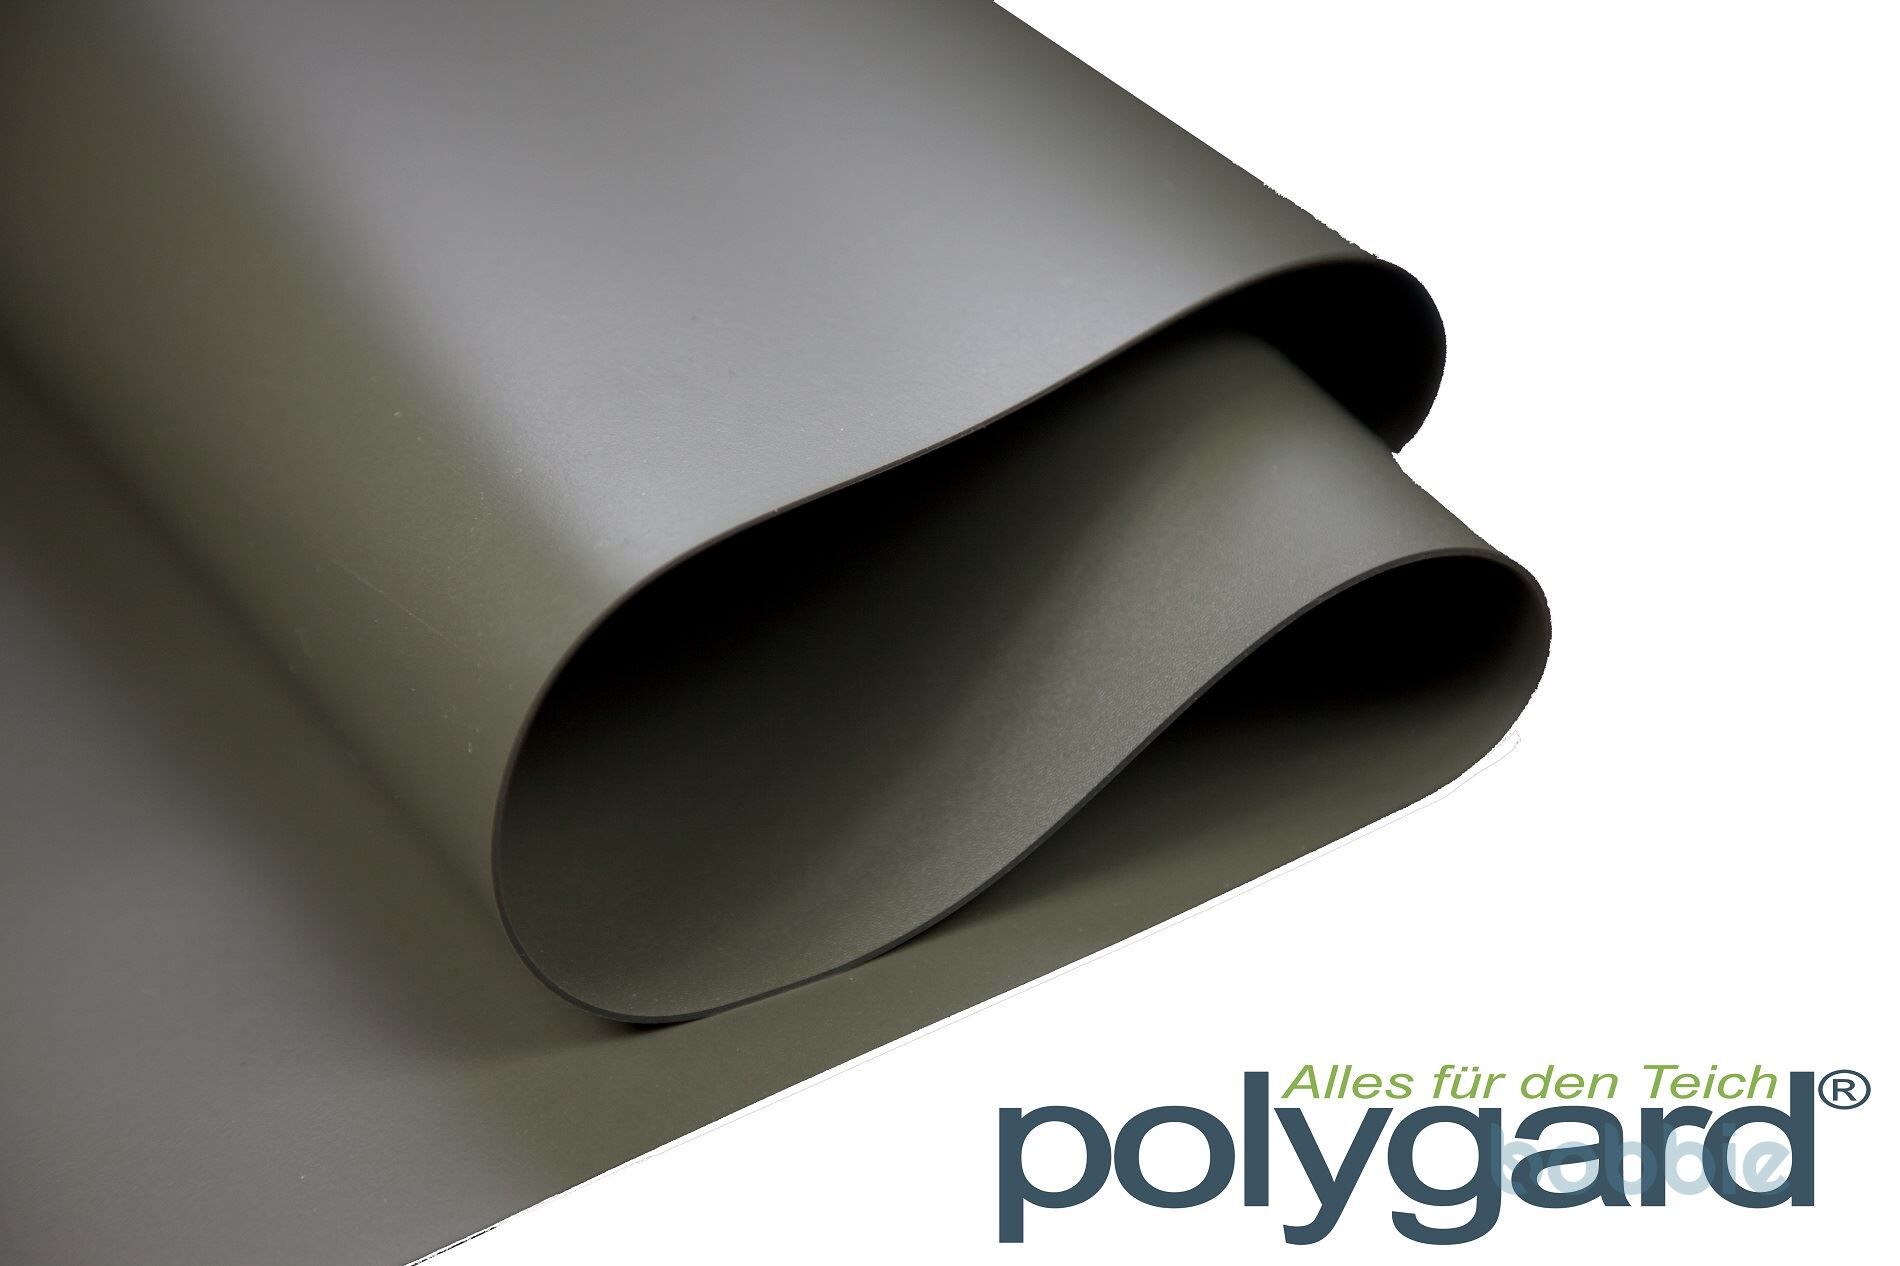 Polygard PVC Teichfolie 1,5mm oliv-grün PrePack - verschiedene Abmassungen